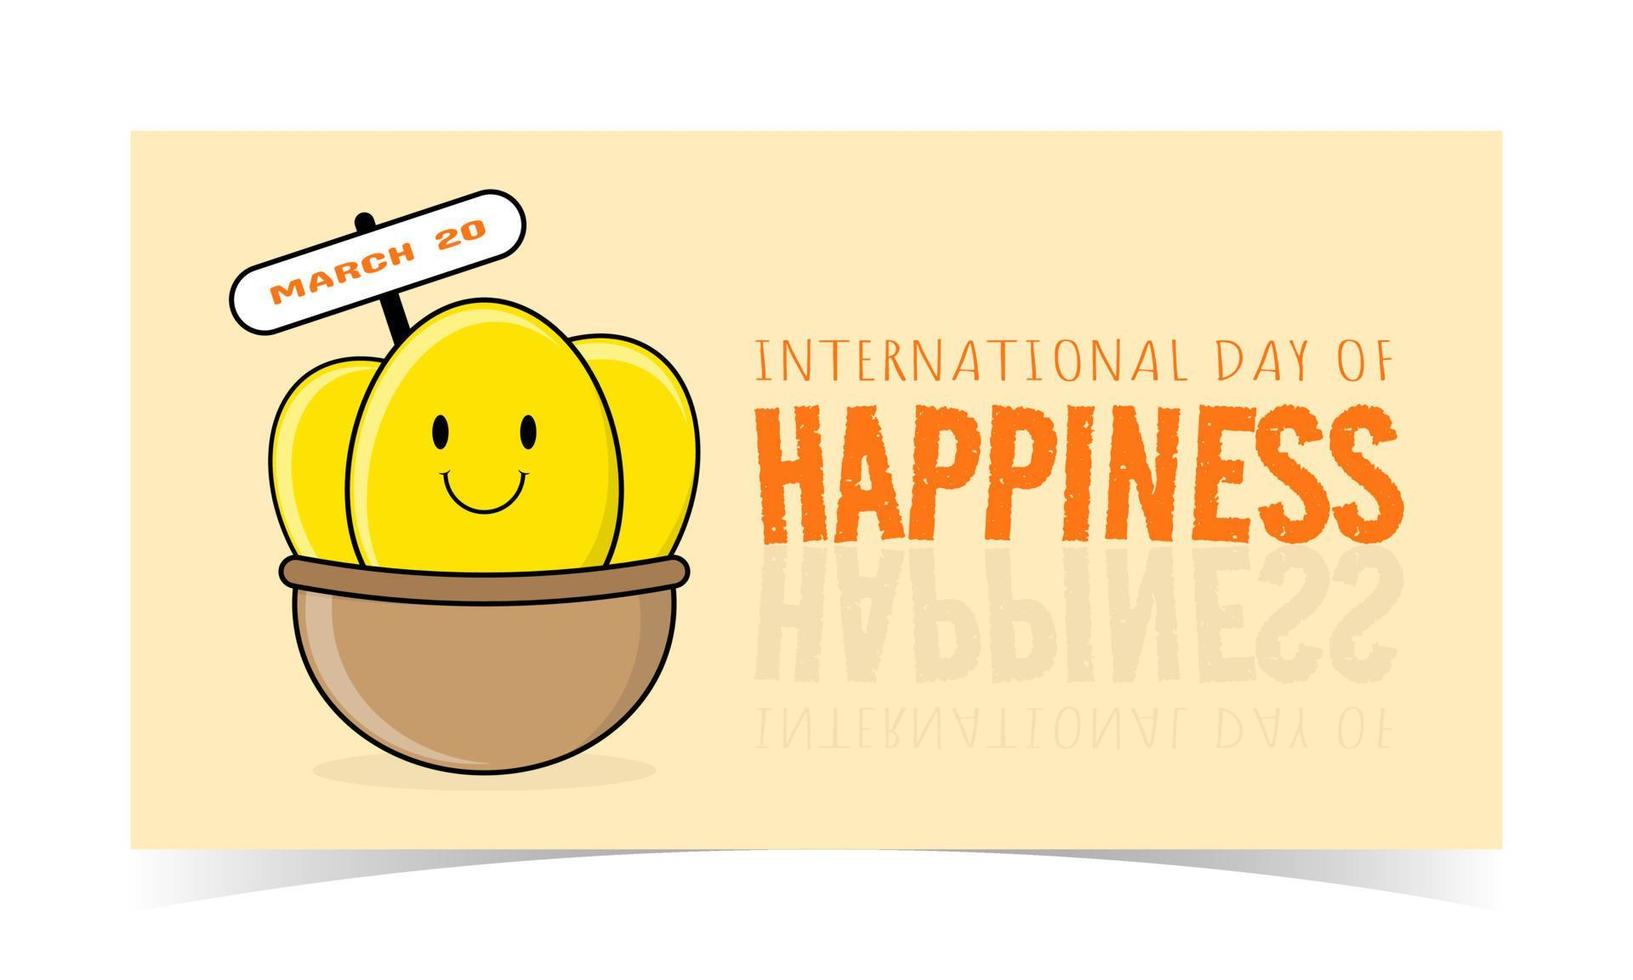 internationell dag av lycka hälsning vektor